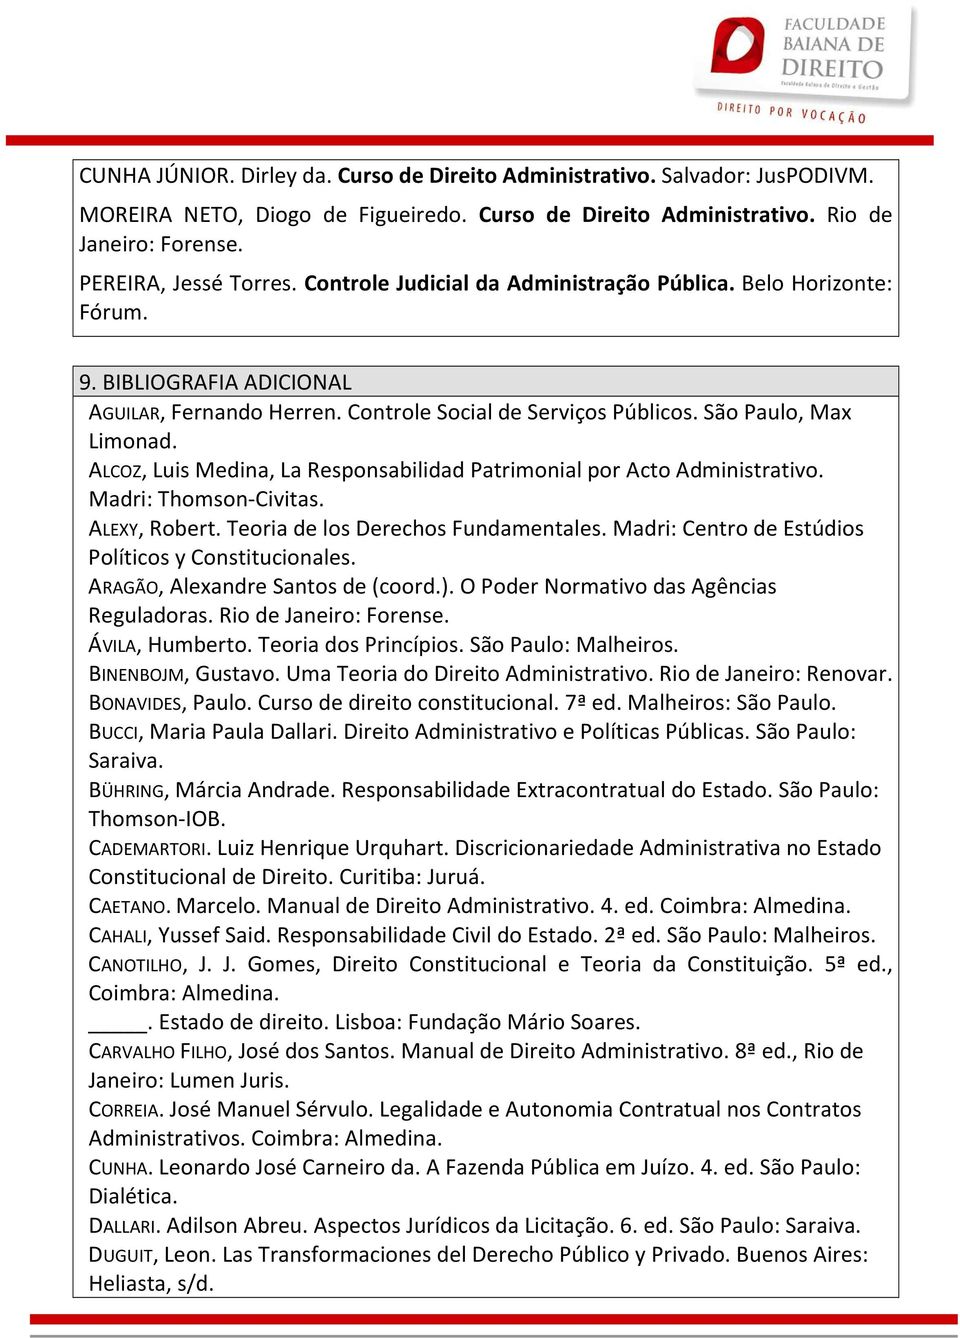 ALCOZ, Luis Medina, La Responsabilidad Patrimonial por Acto Administrativo. Madri: Thomson-Civitas. ALEXY, Robert. Teoria de los Derechos Fundamentales.